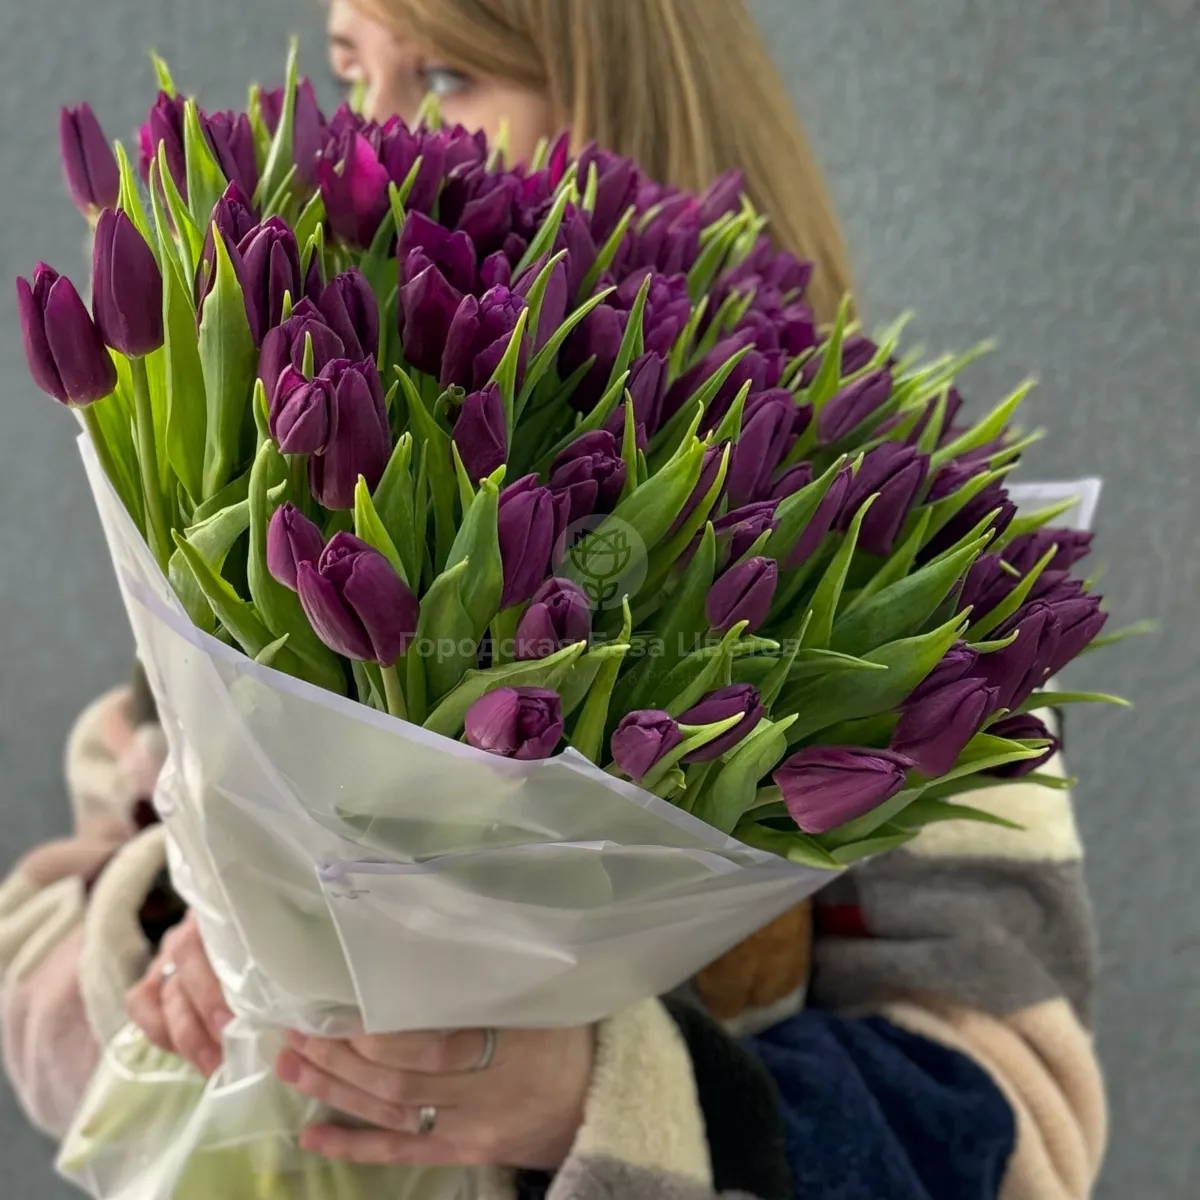 95 бордово-фиолетовых тюльпанов